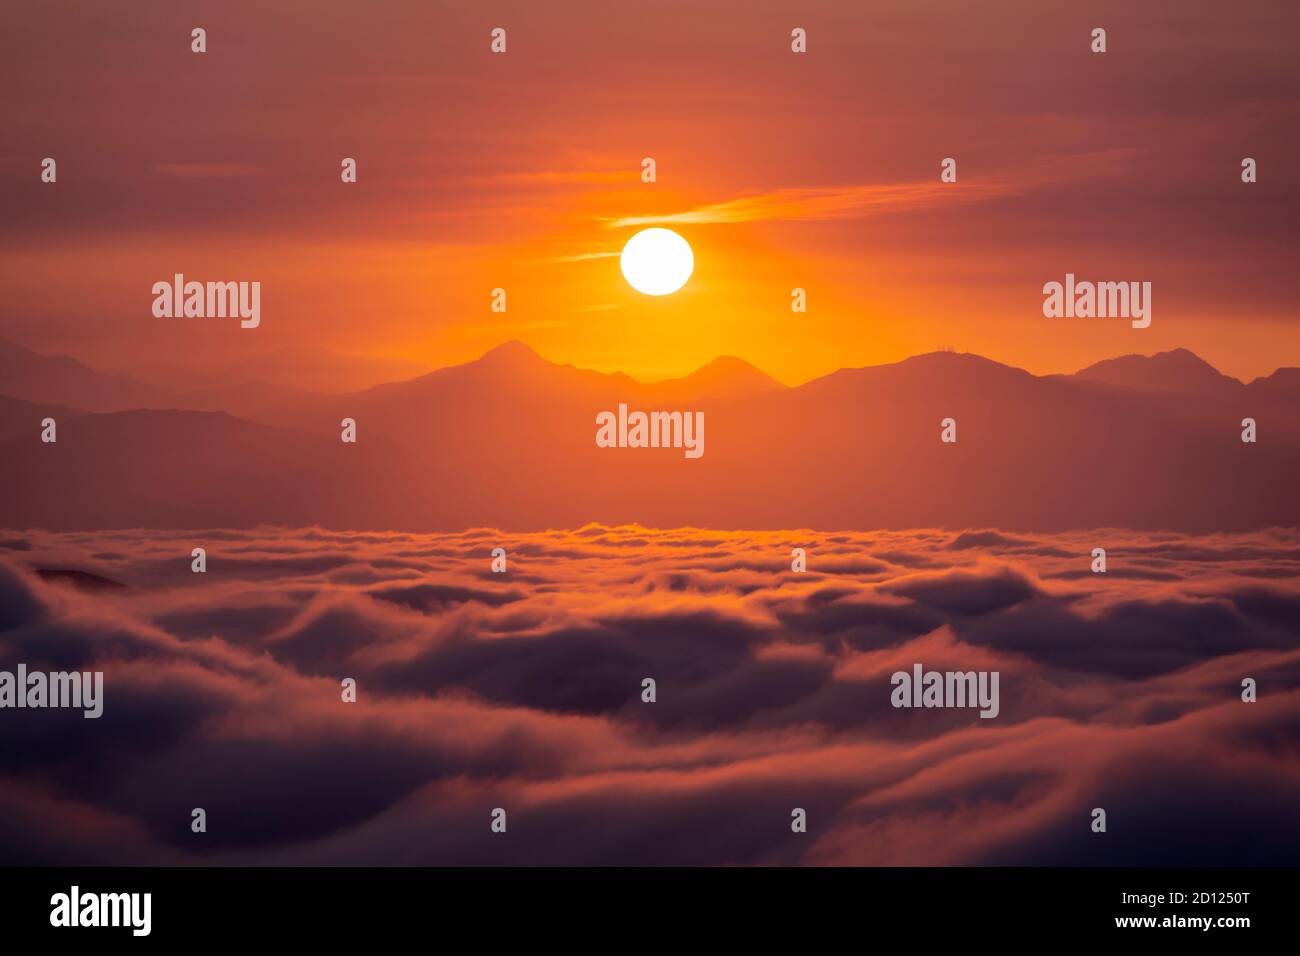 Vista del amanecer naranja, la niebla del valle y las montañas de San Gabriel desde Rocky Peak Park en el barrio Chatsworth de los Ángeles, California. Foto de stock